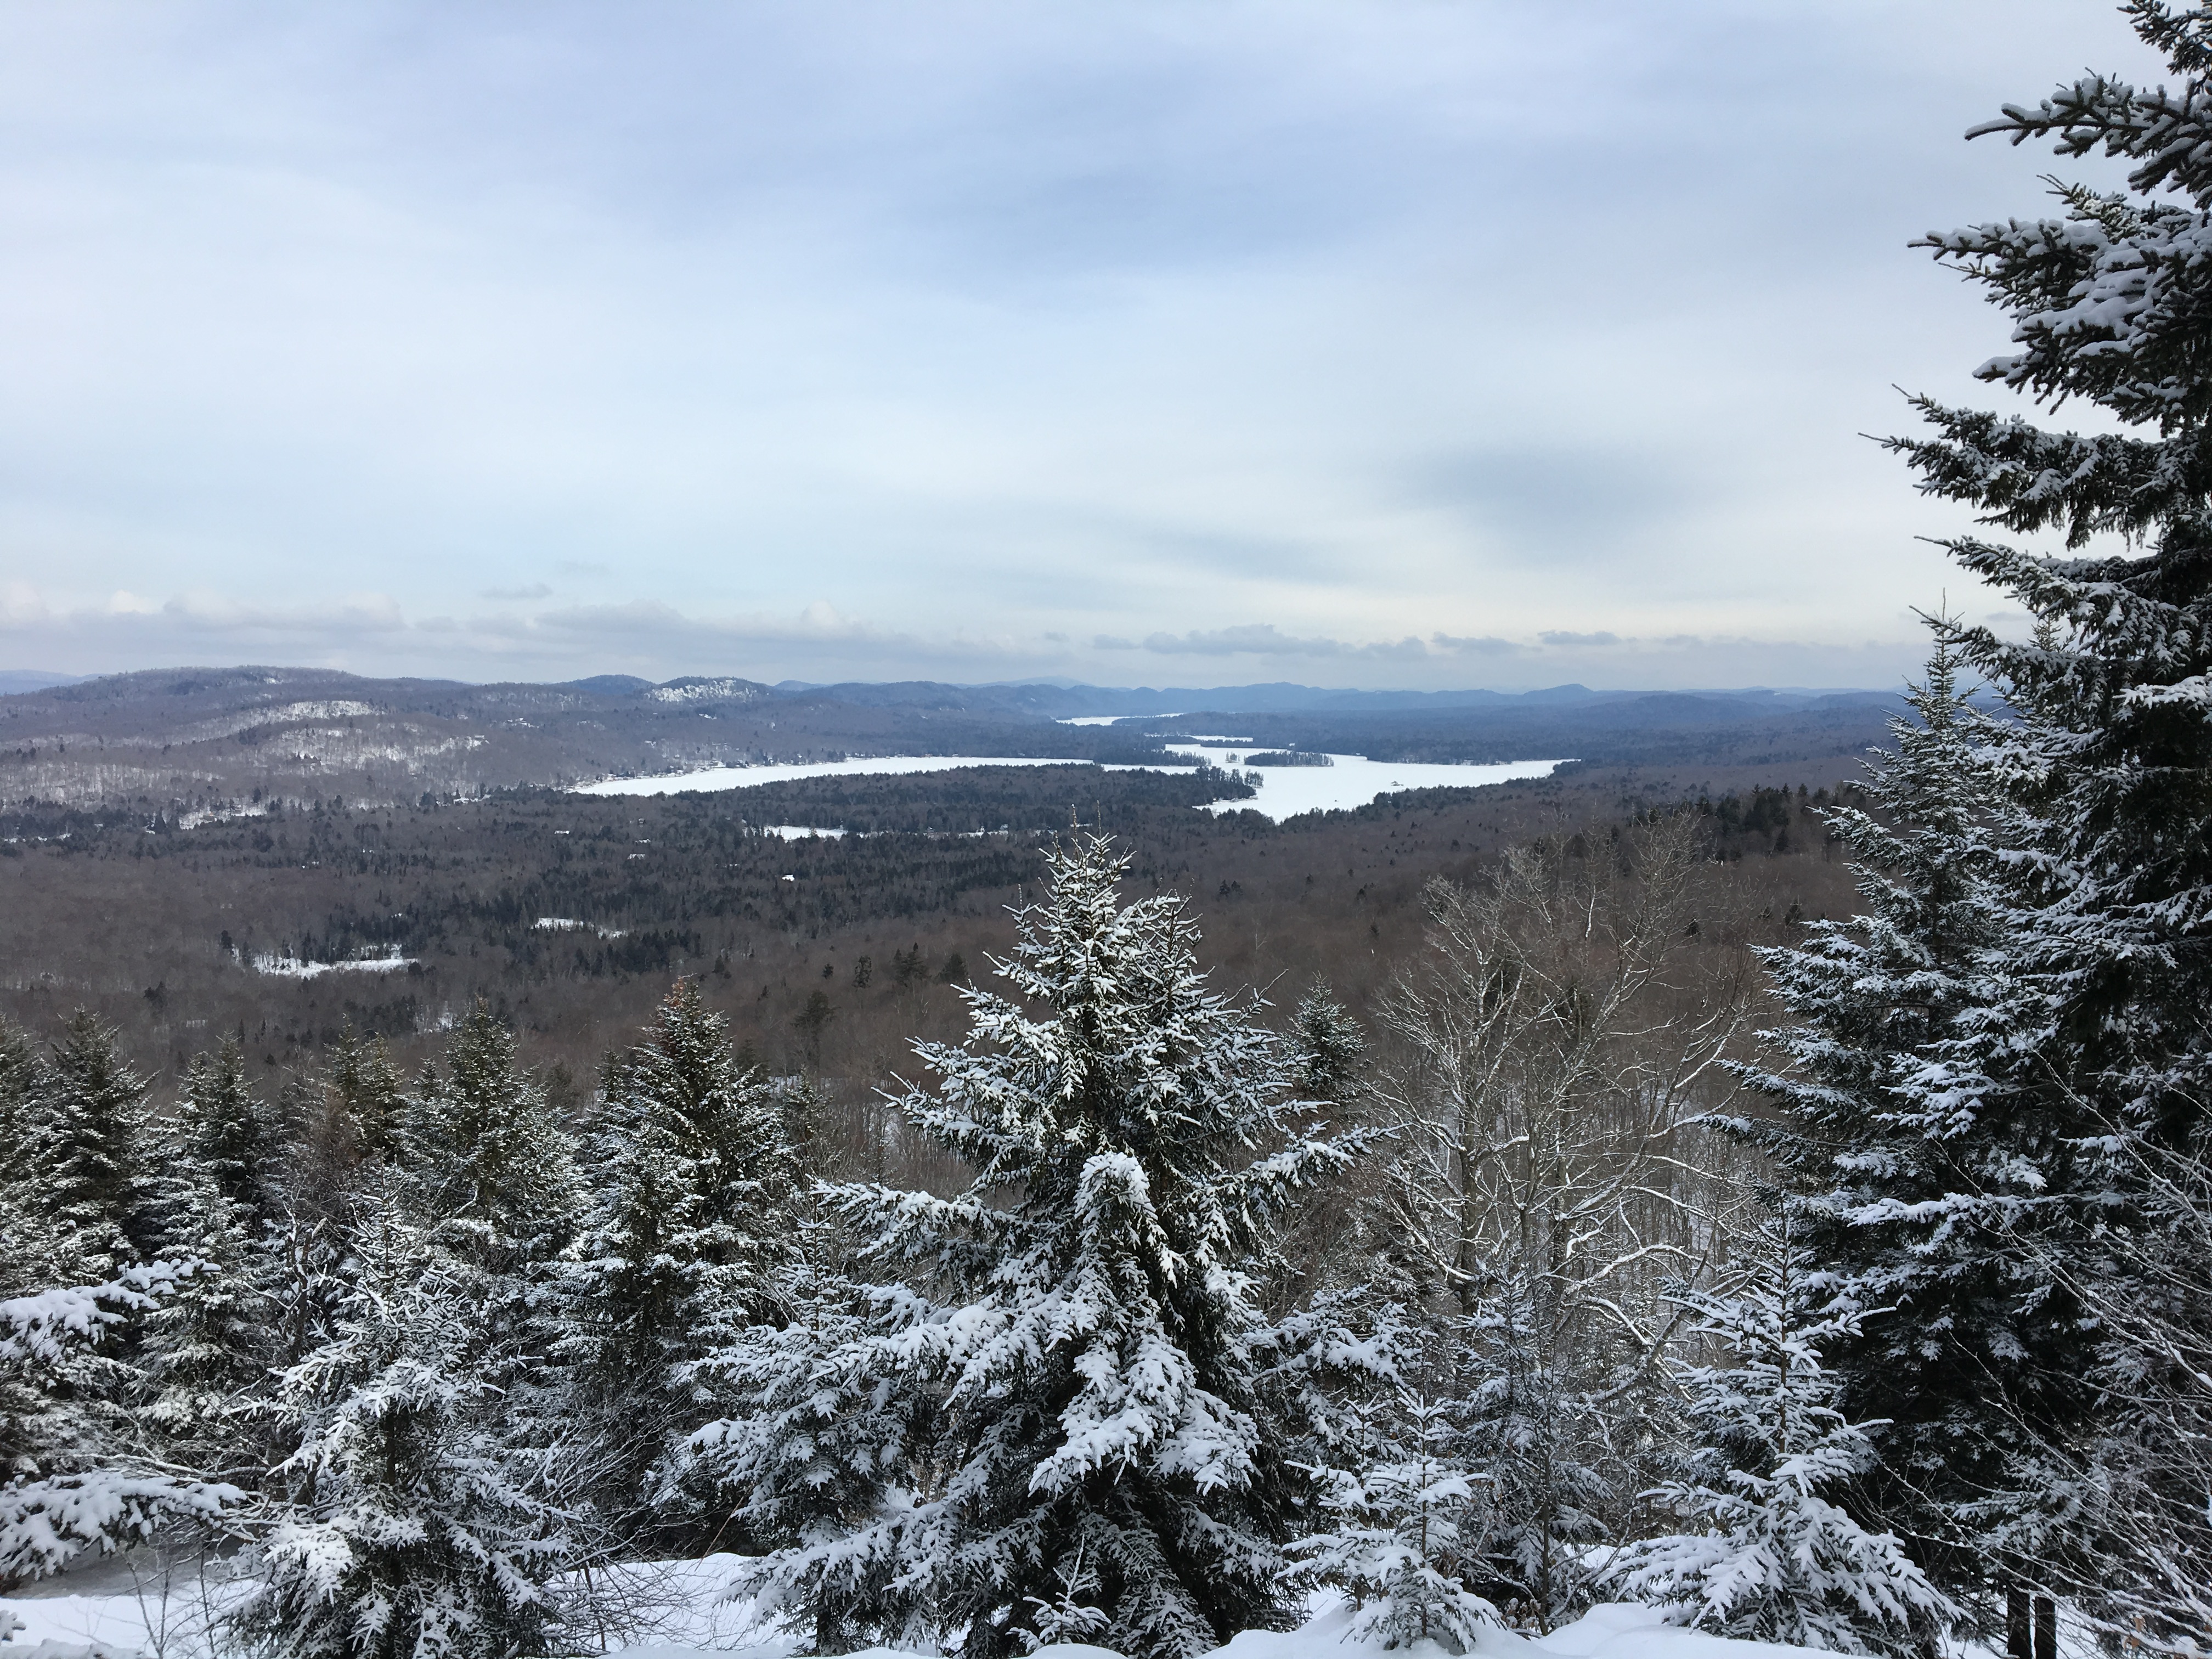 Winter mountain scene